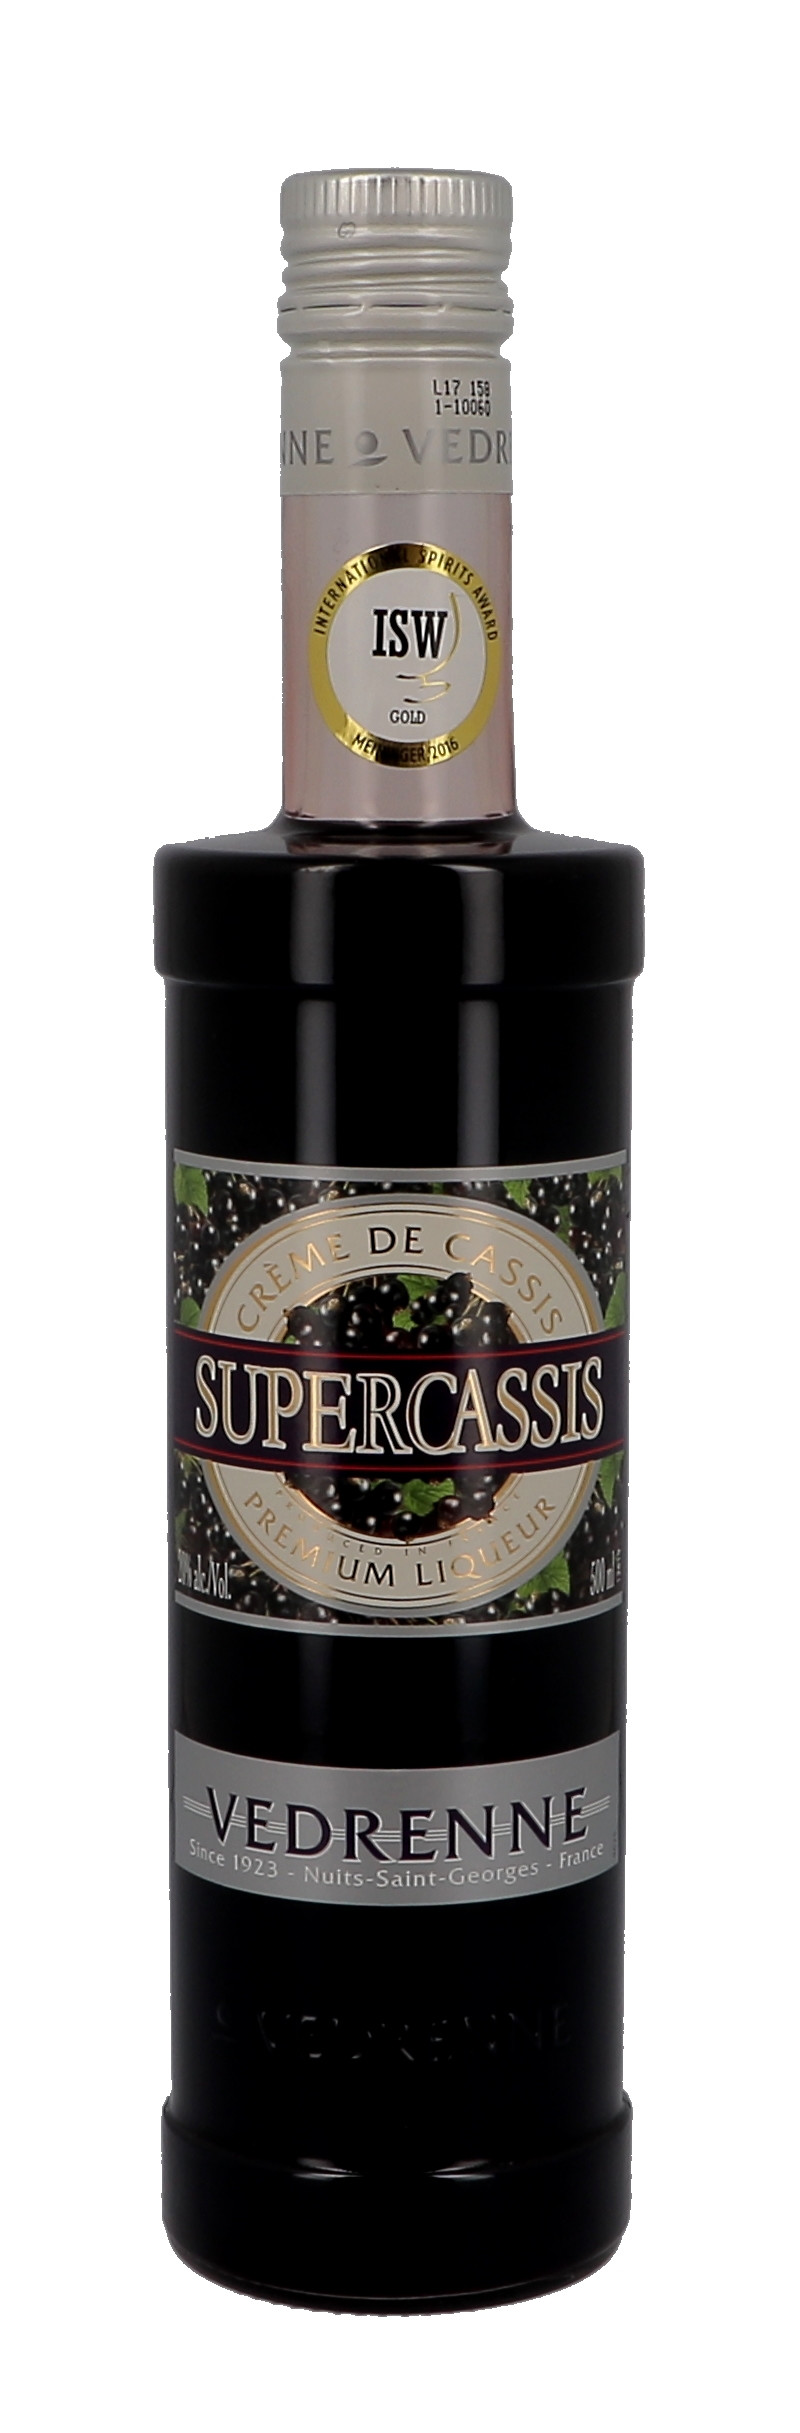 Vedrenne Supercassis Creme de Cassis 50cl 20% Likeur